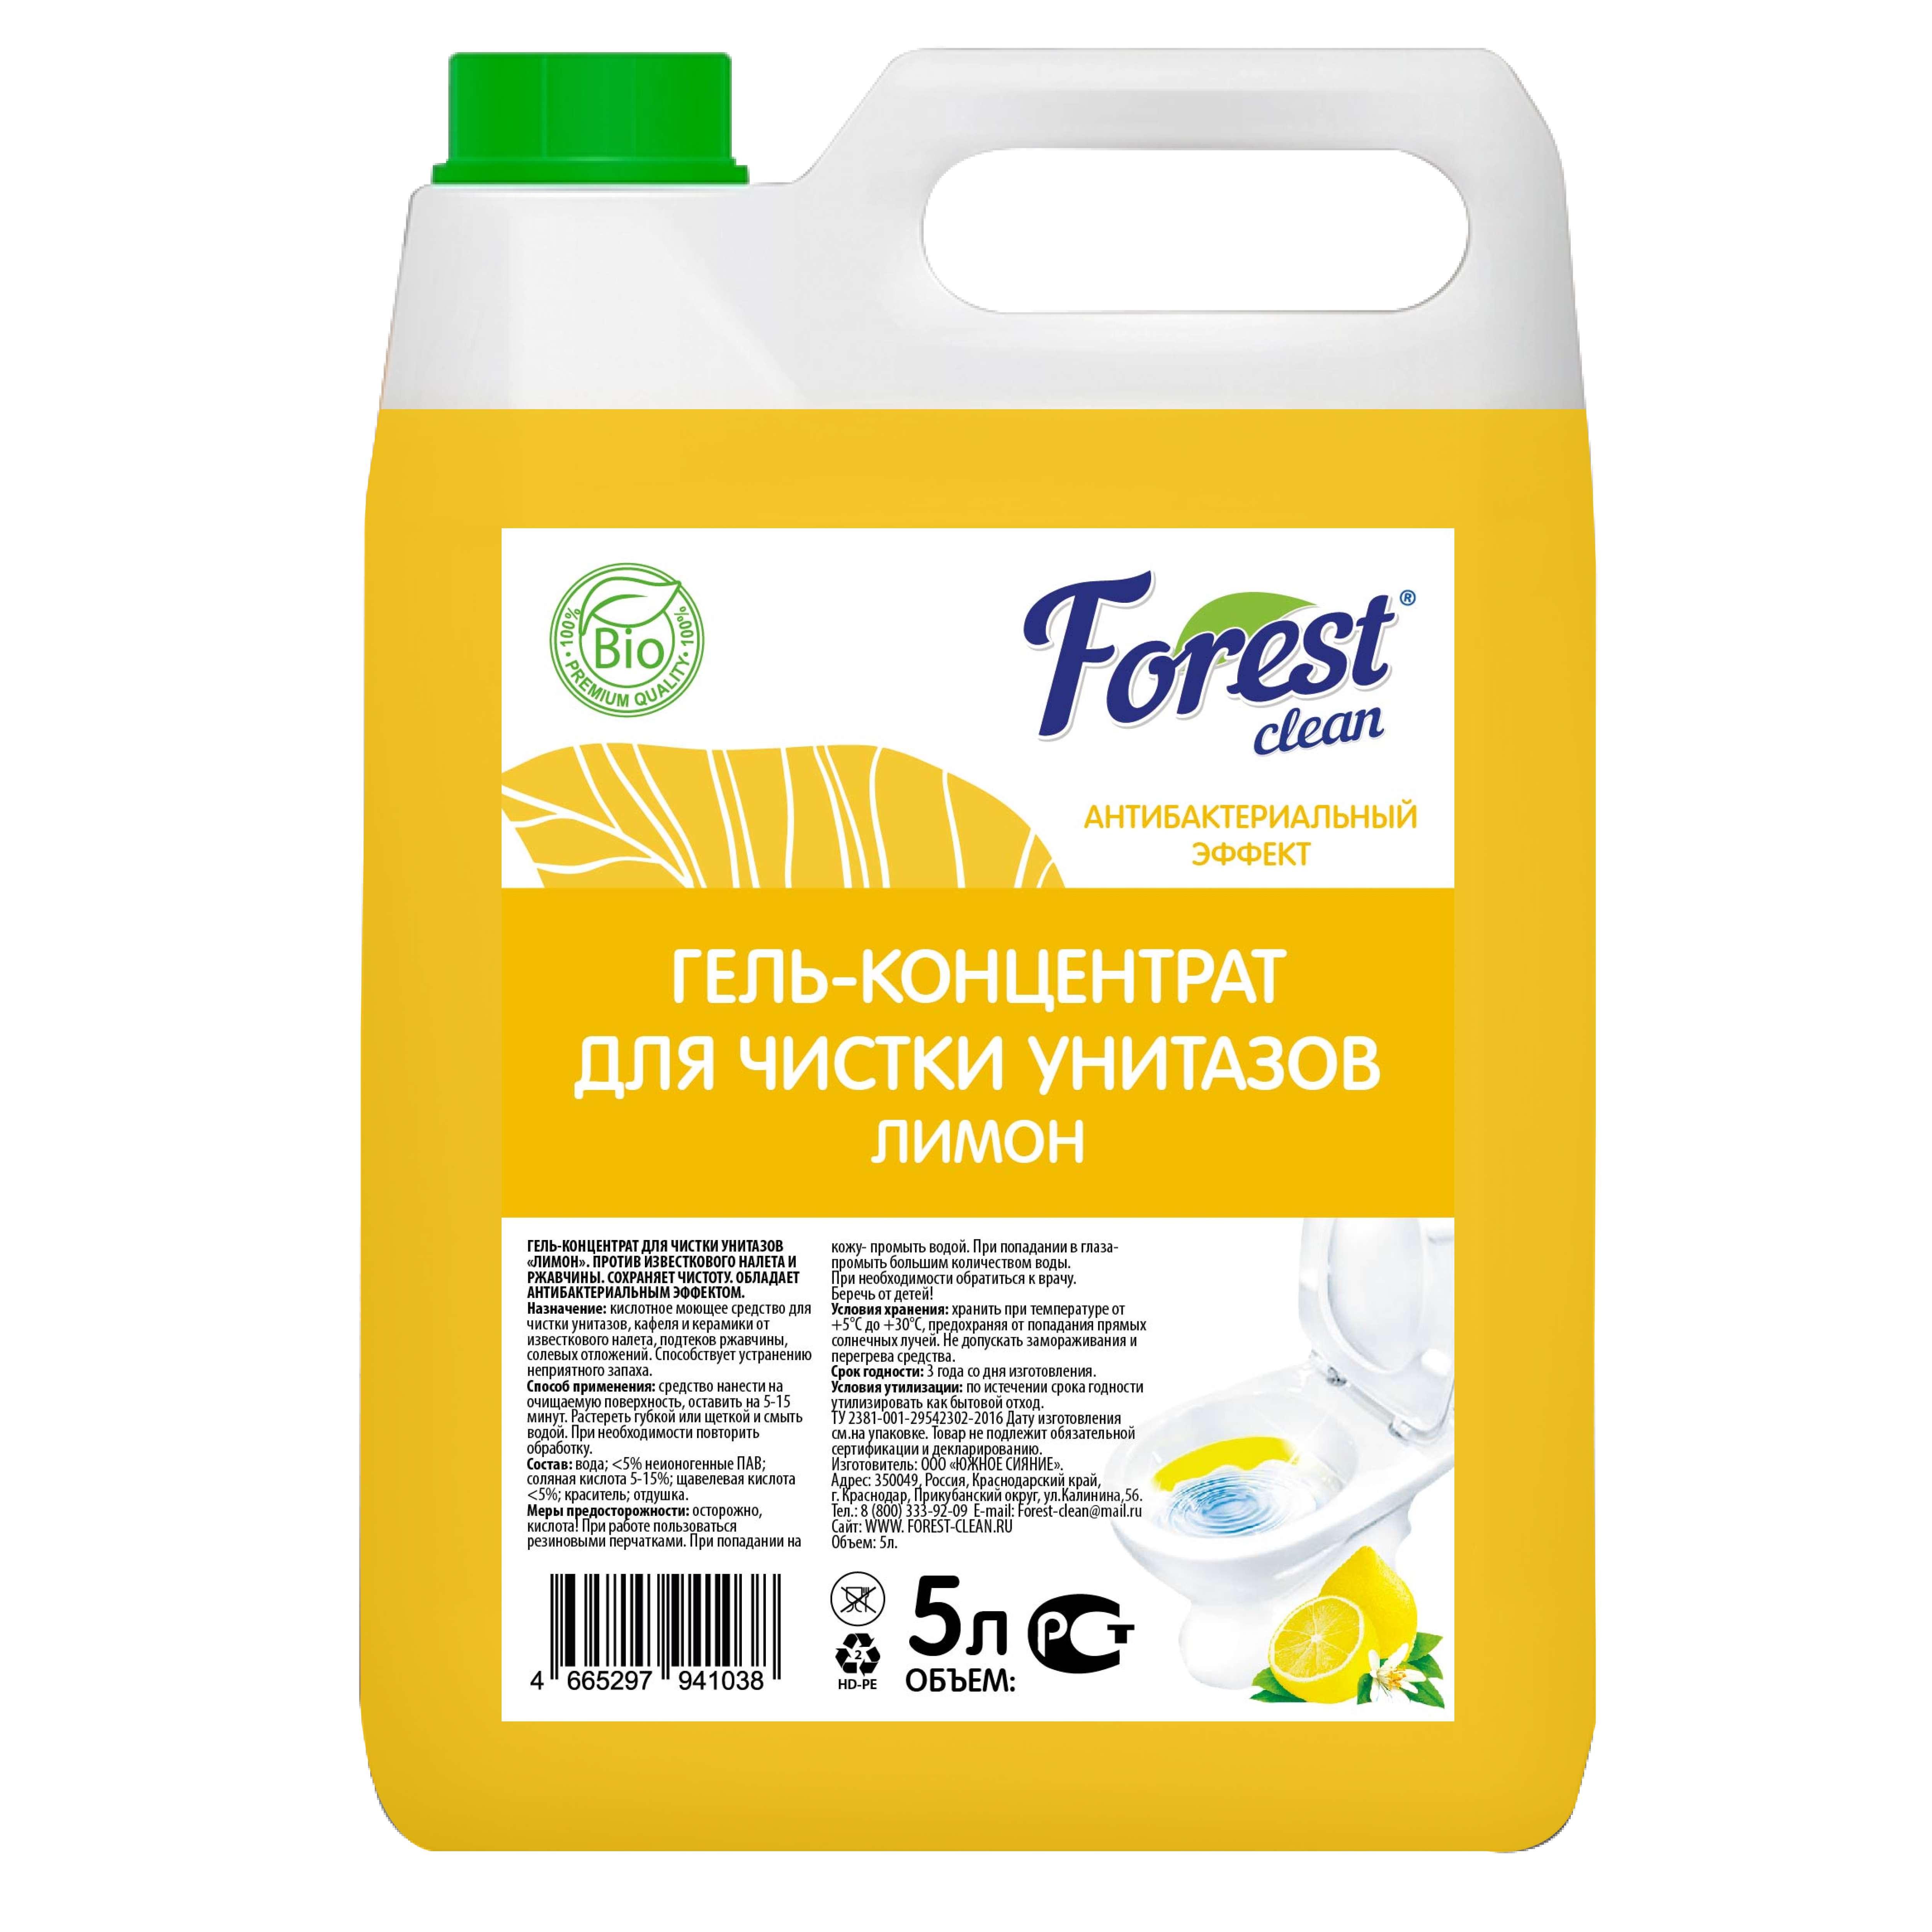 Forest Clean гель для чистки унитазов "Лимон" 5 л.